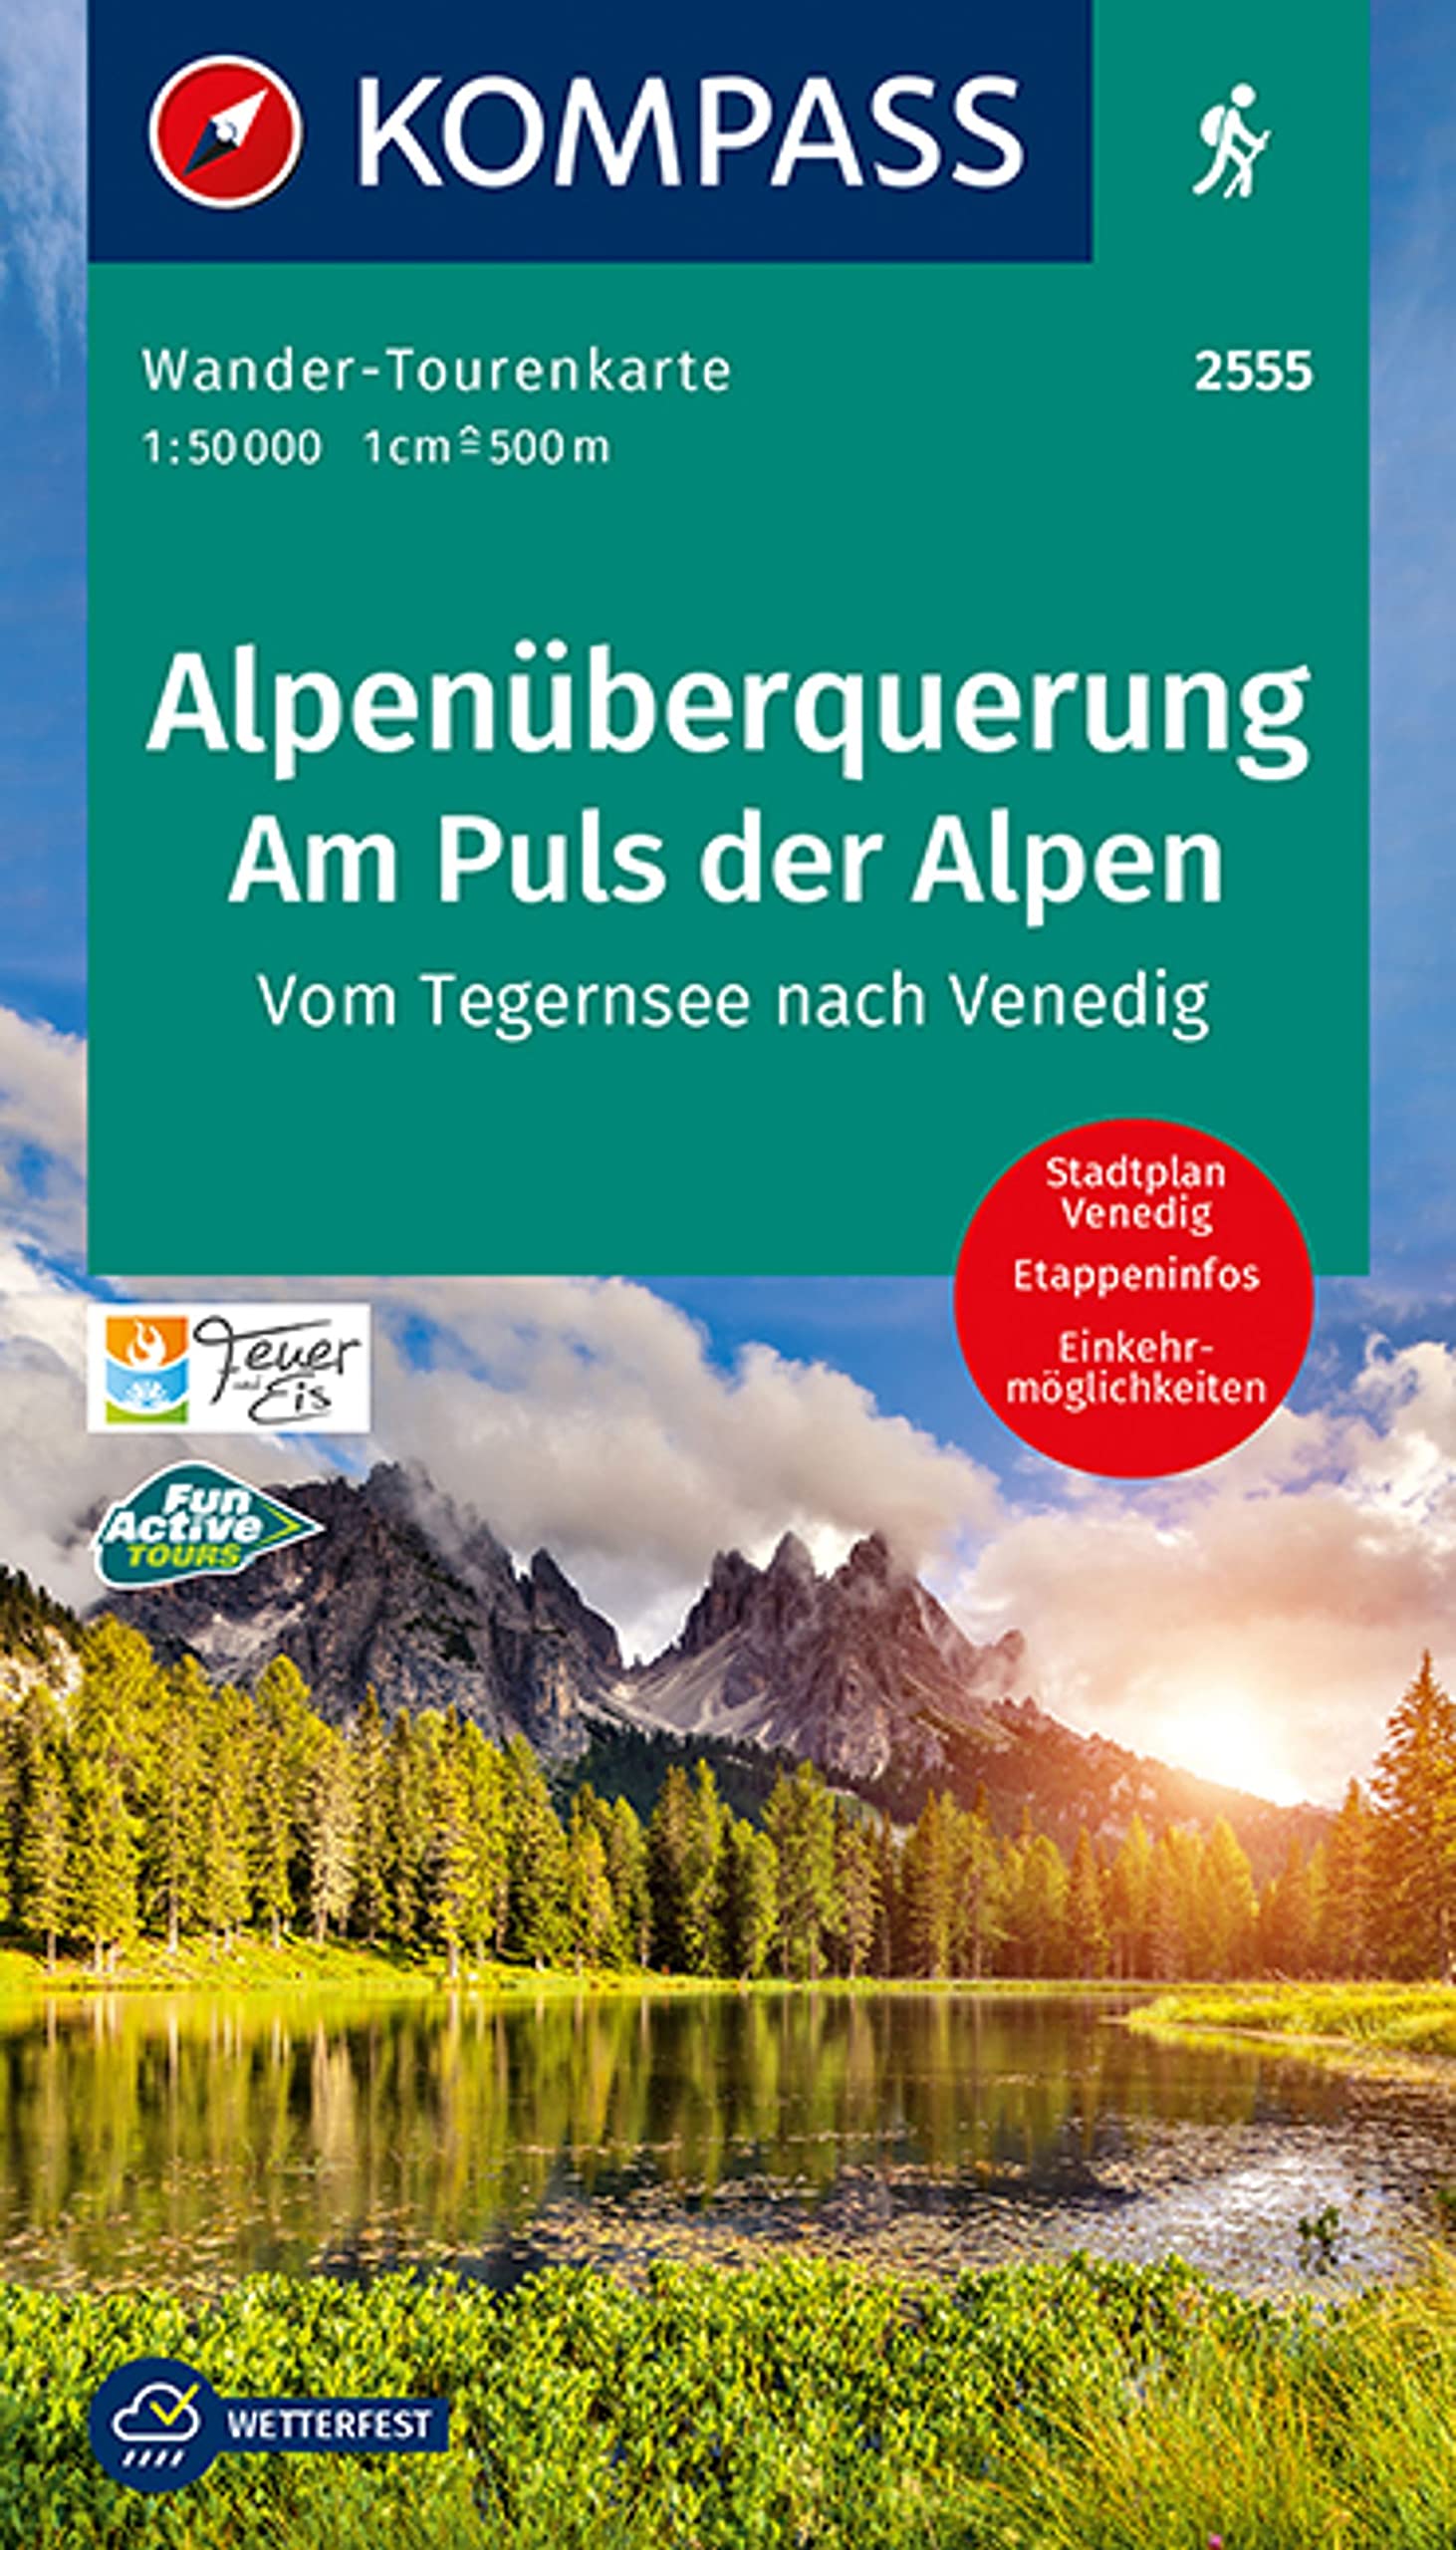 Online bestellen: Wandelkaart 2555 Alpenüberquerung, Am Puls der Alpen | Kompass